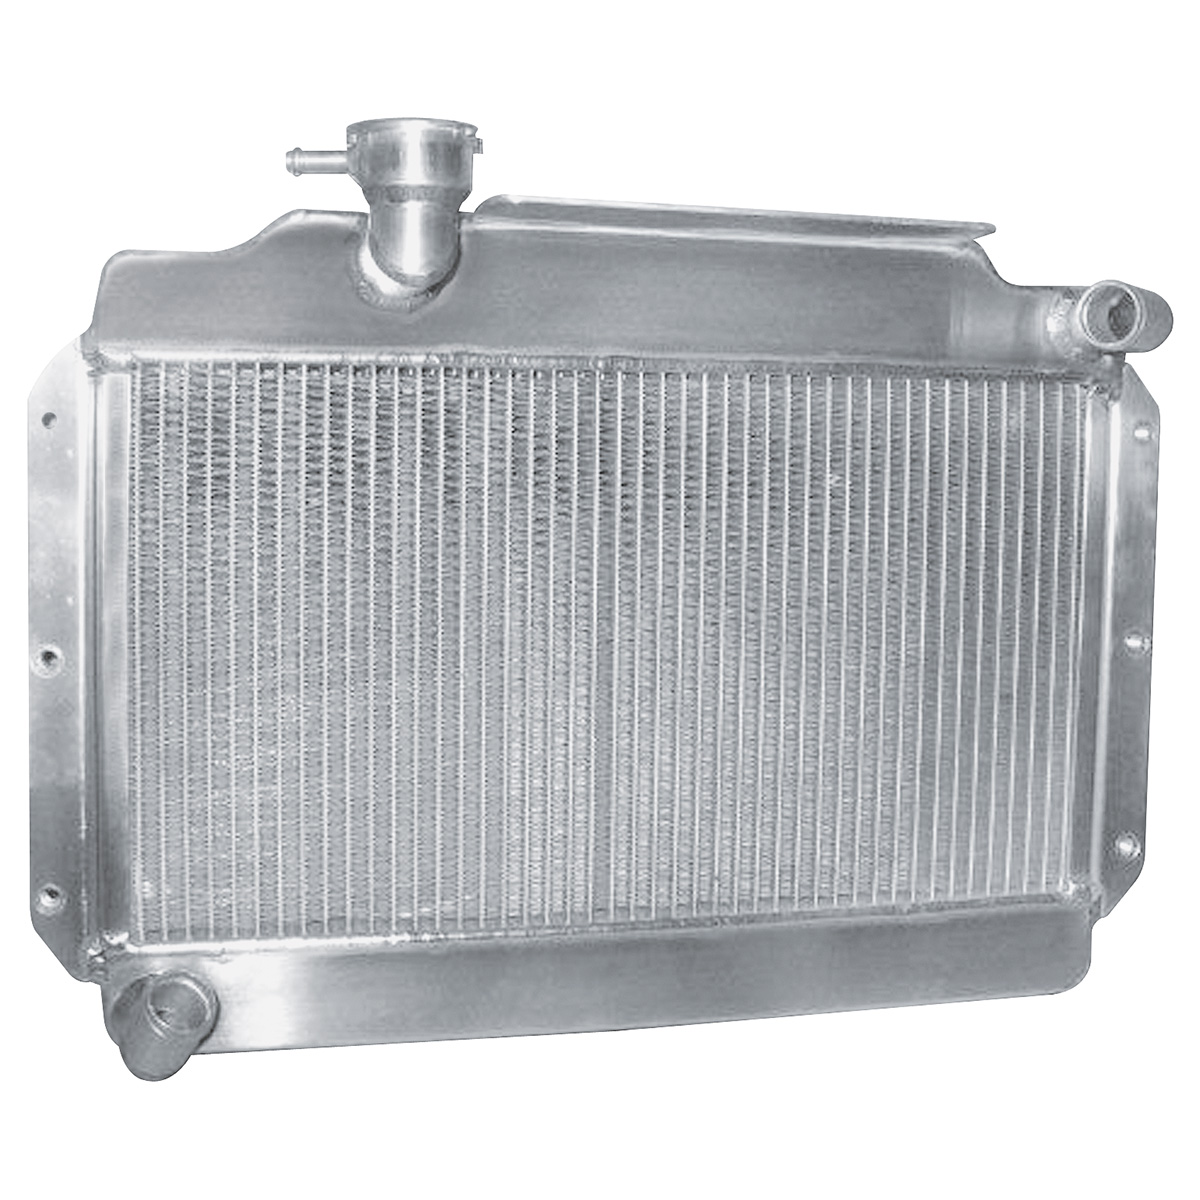 MGA Radiator Aluminium Uprated 1955 - 1962 fits 1500 1600 + MK2 | eBay